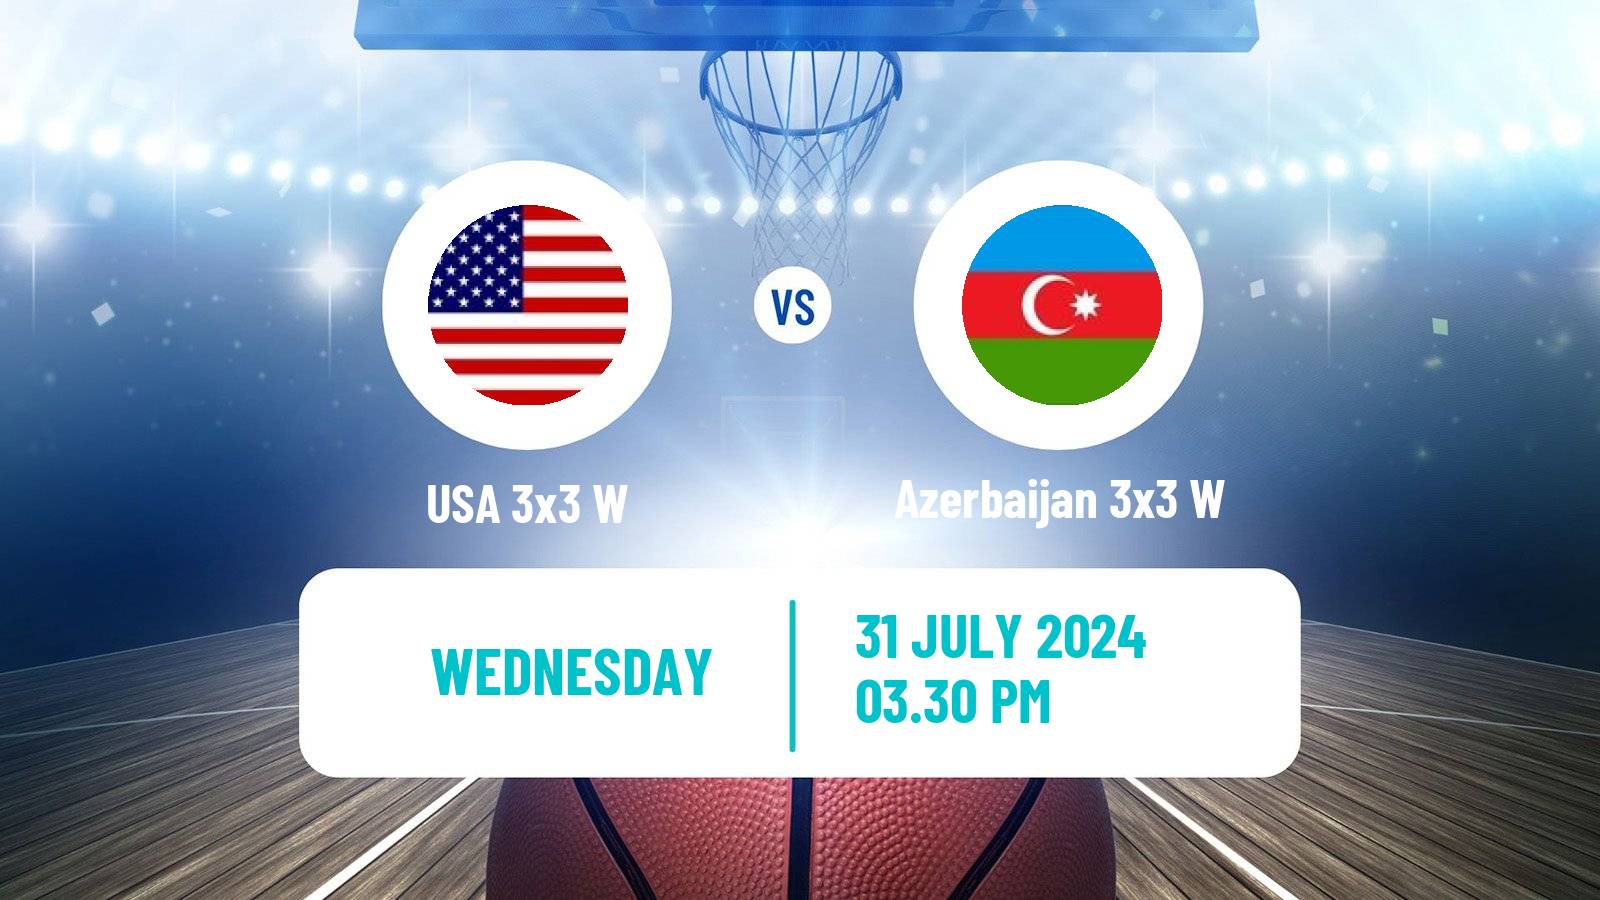 Basketball Olympic Games Basketball 3x3 Women USA 3x3 W - Azerbaijan 3x3 W